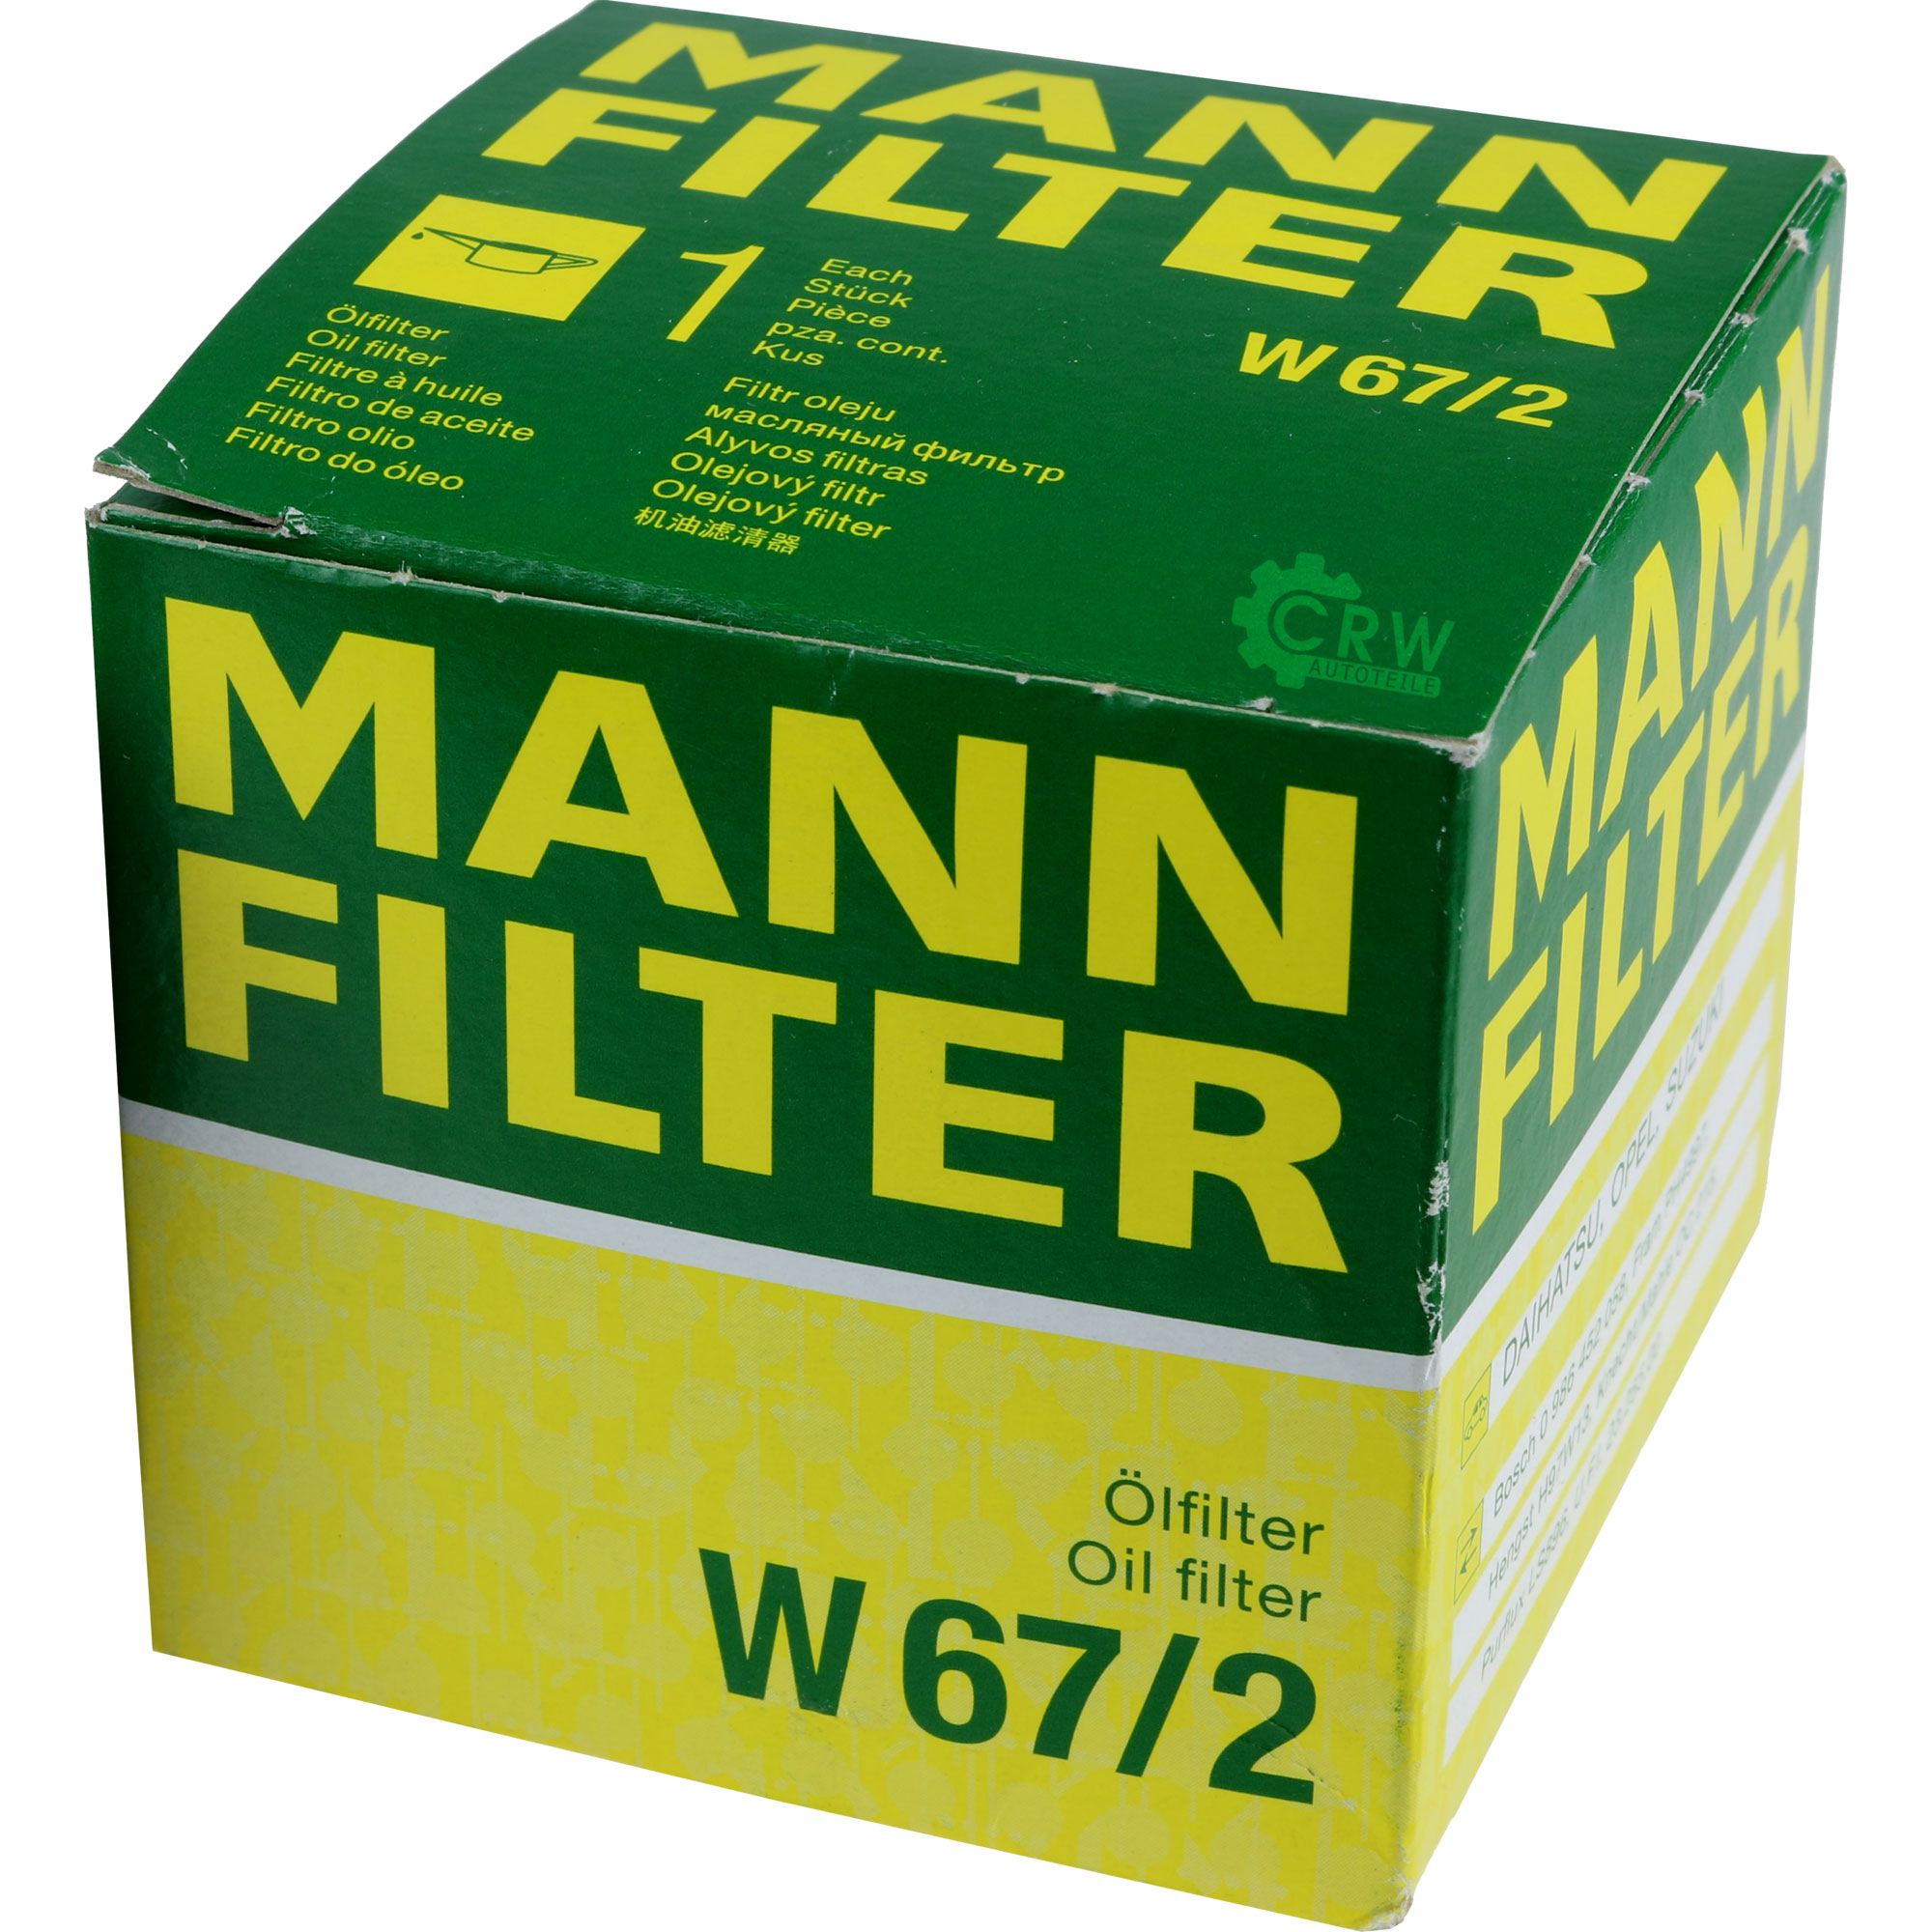 MANN-FILTER Ölfilter W 67/2 Oil Filter